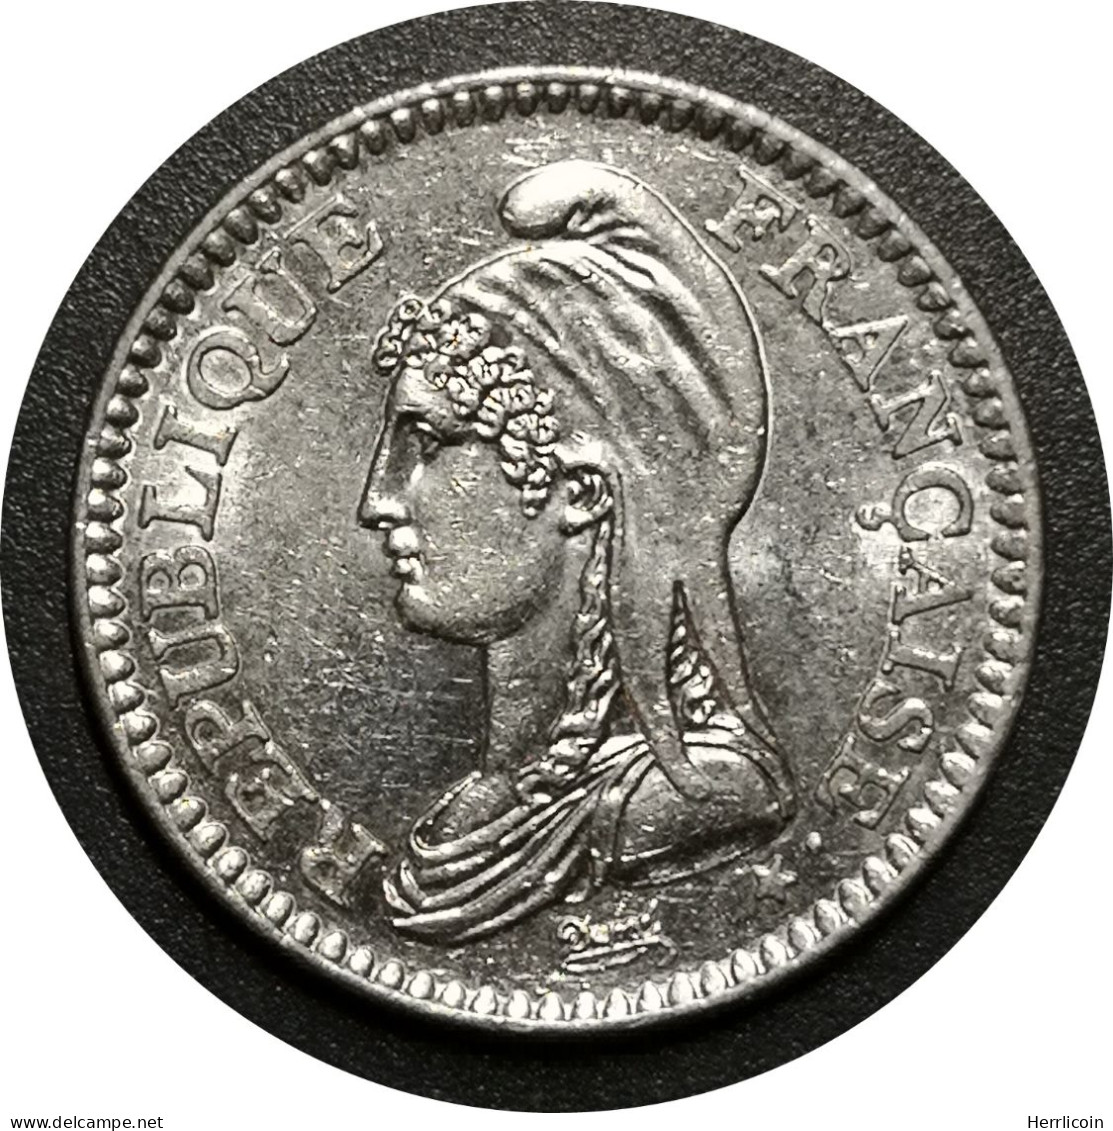 Monnaie France - 1992 - 1 Franc République Nickel - Commemorative